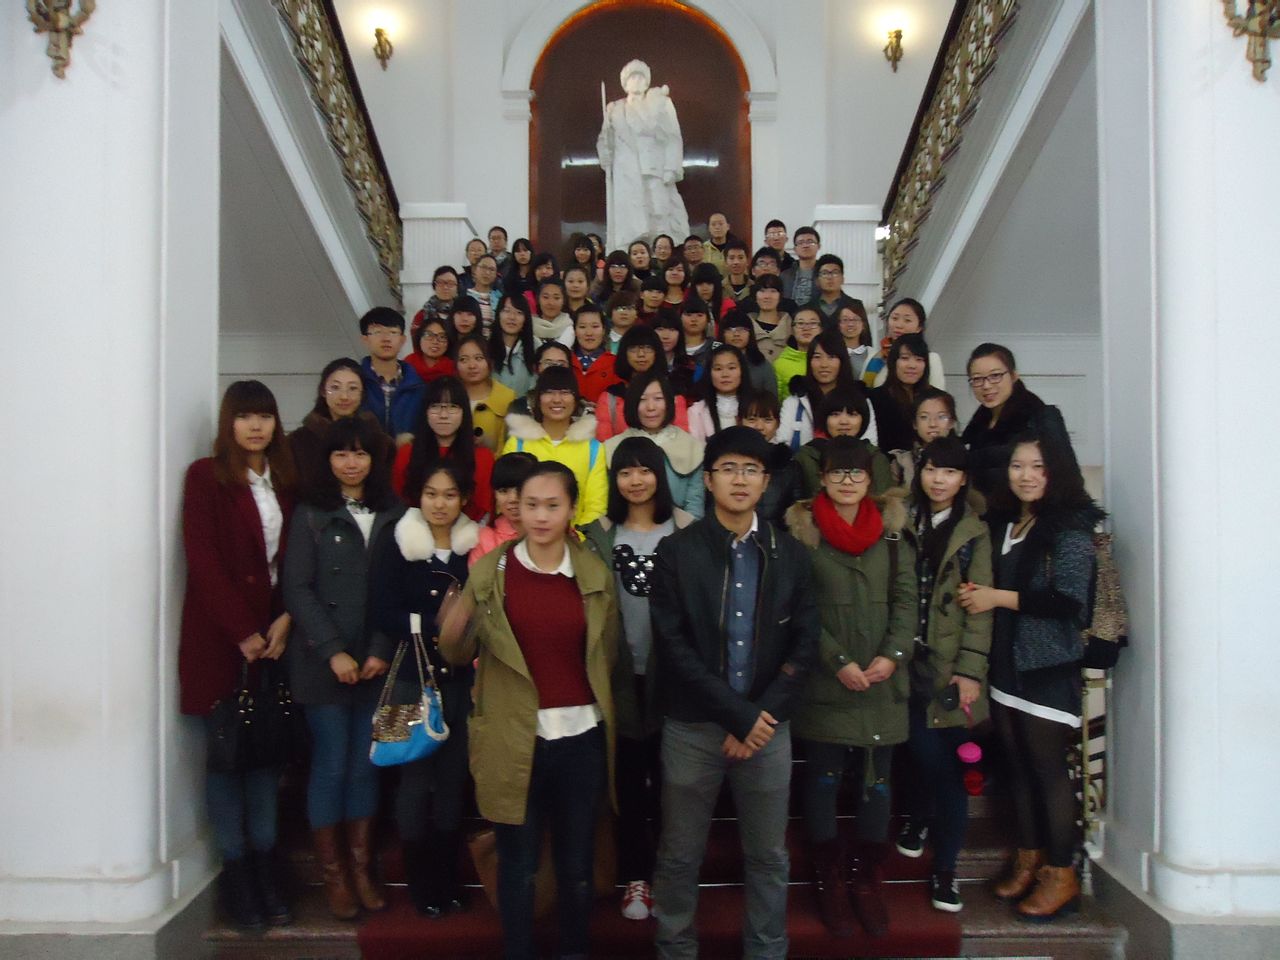 輔導員張博老師帶領會員參觀東北烈士紀念館